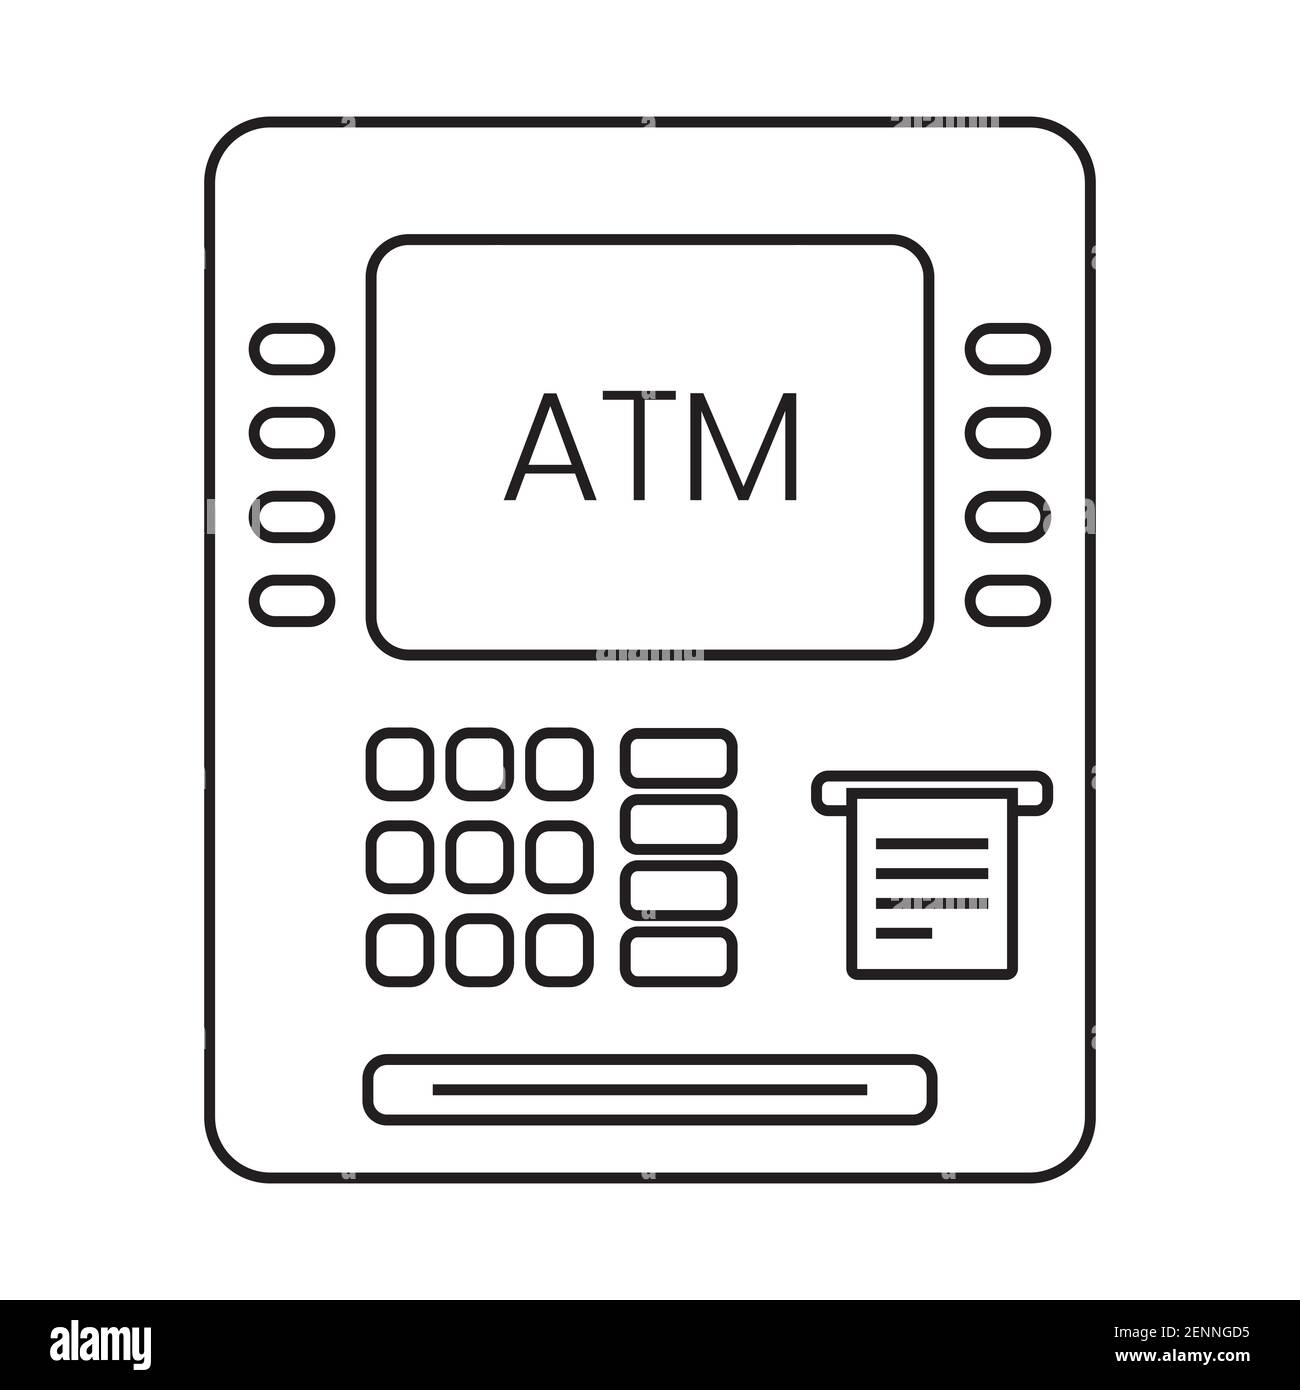 Icône d'illustration de ligne ATM (Automated Teller machine) pour les applications ou sites web Illustration de Vecteur